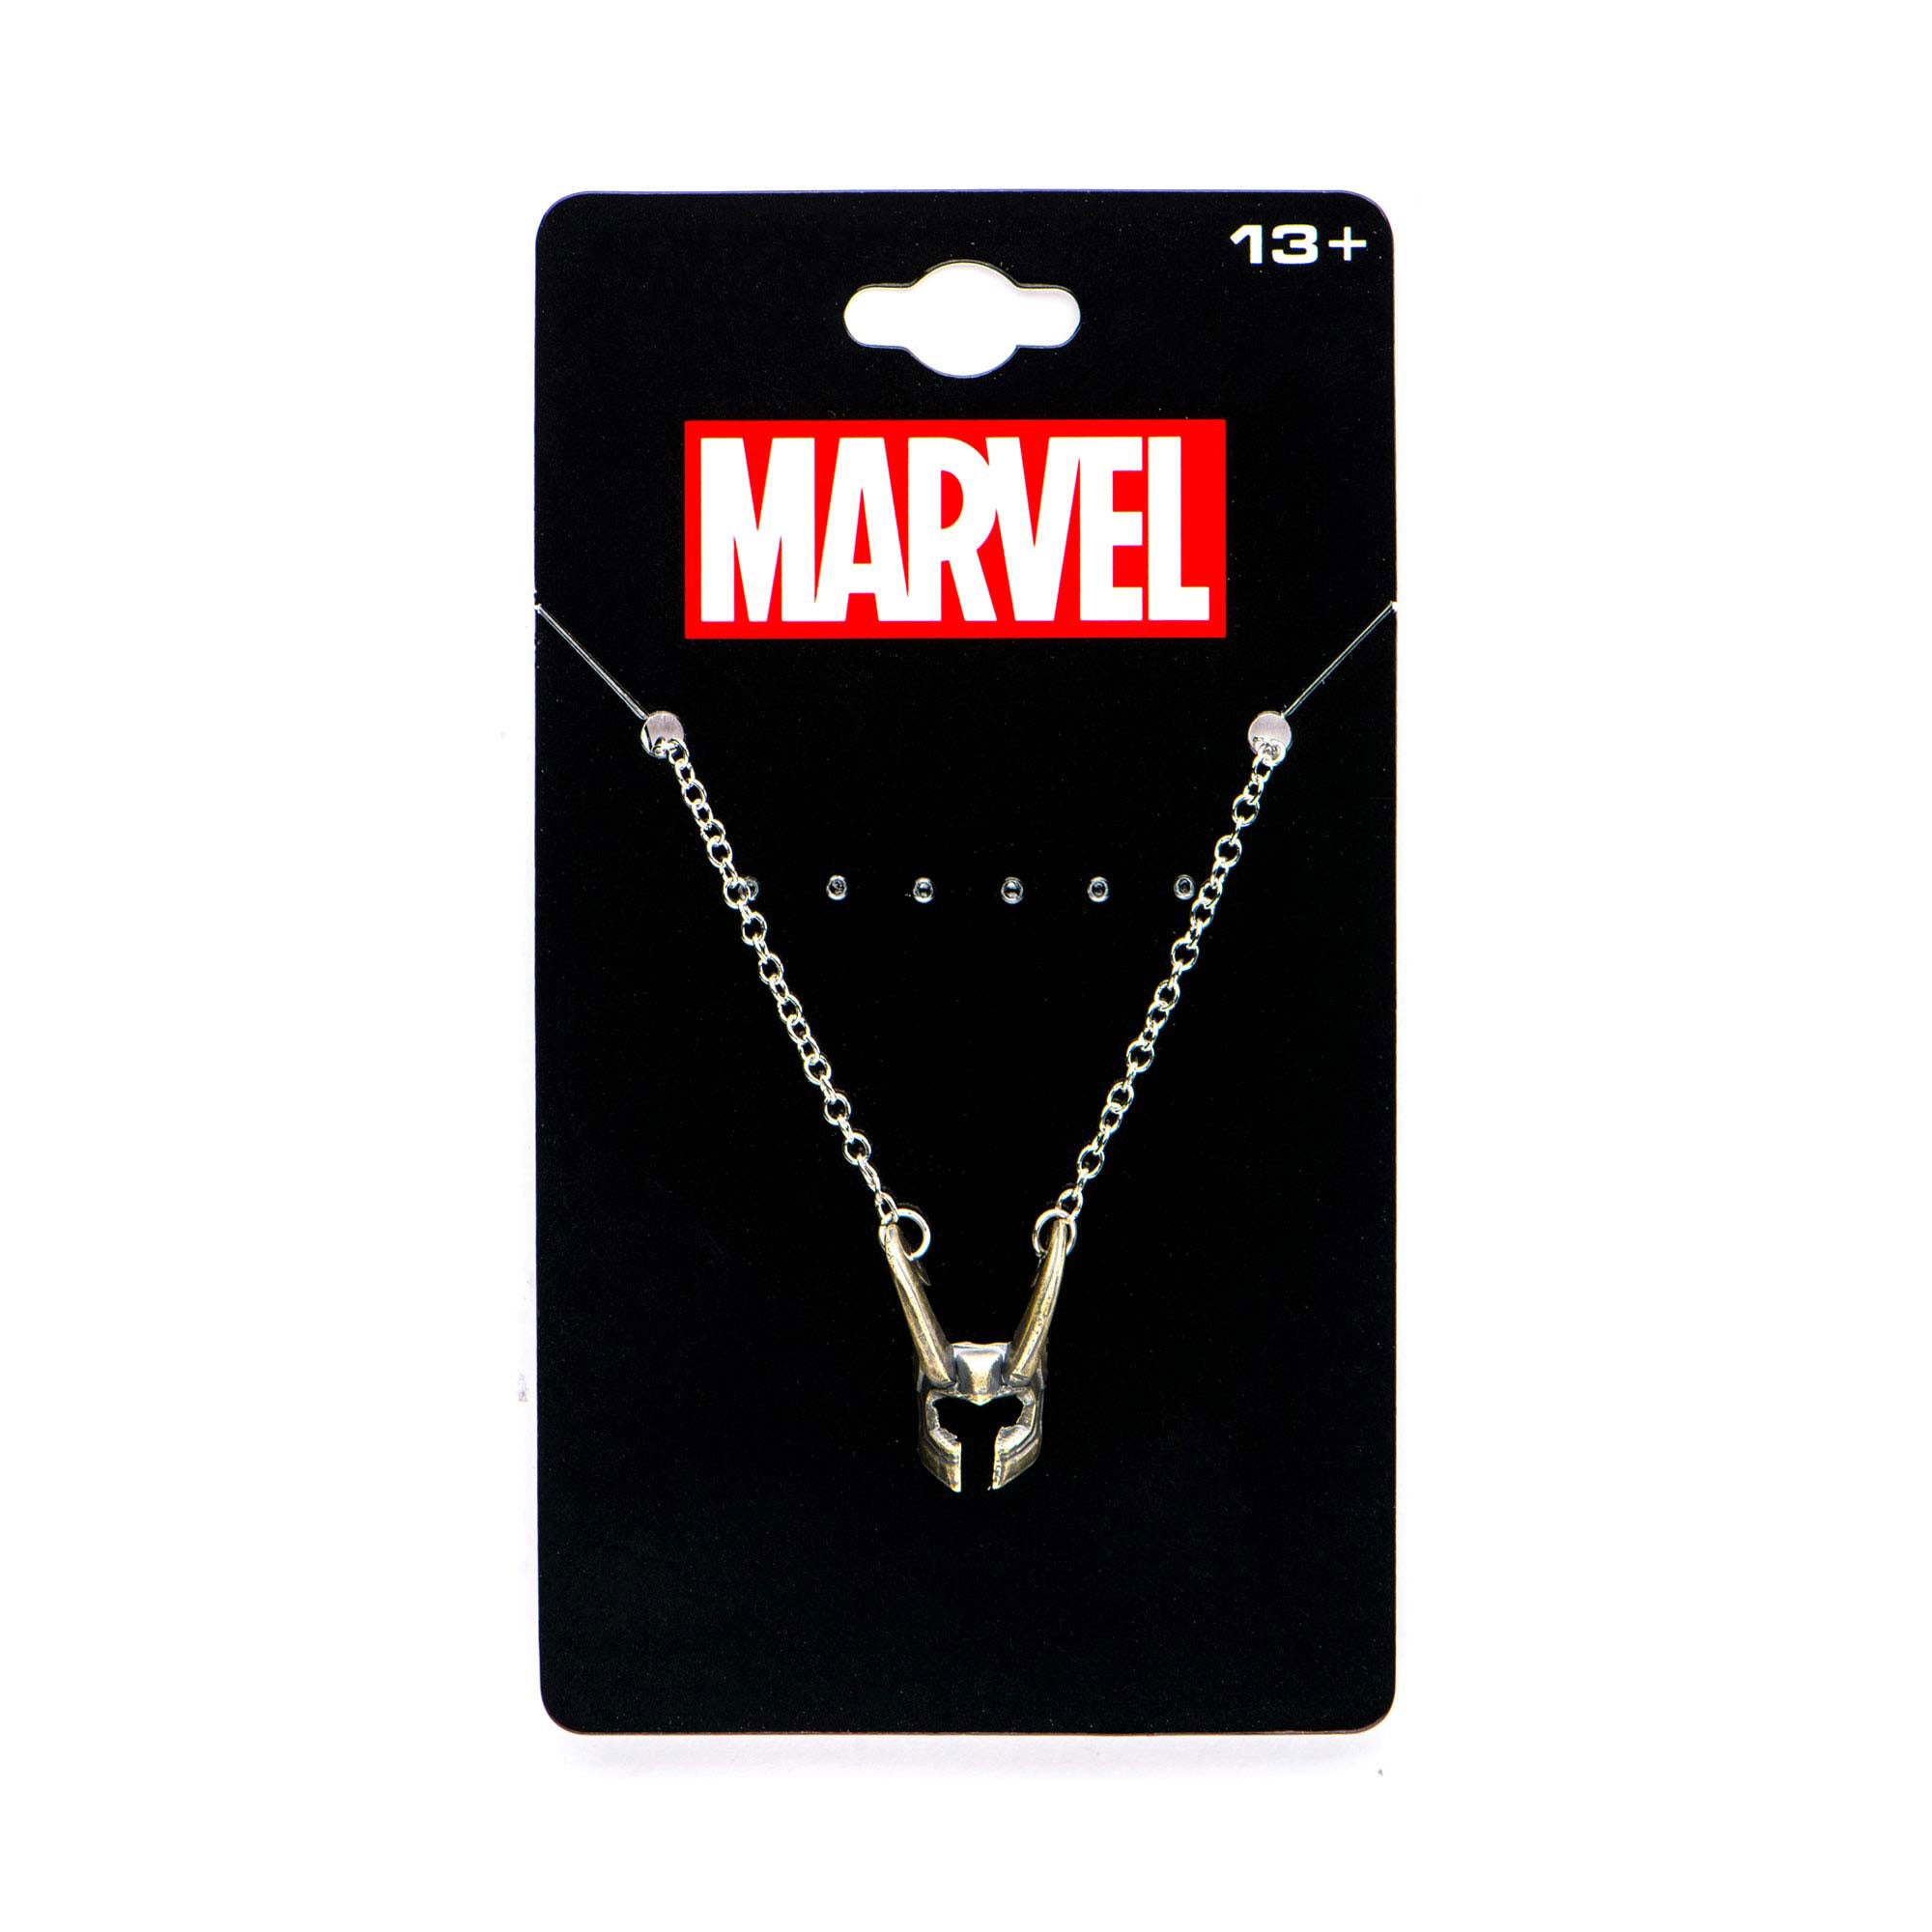 Marvel Cut Out Loki Helmet Pendant Necklace